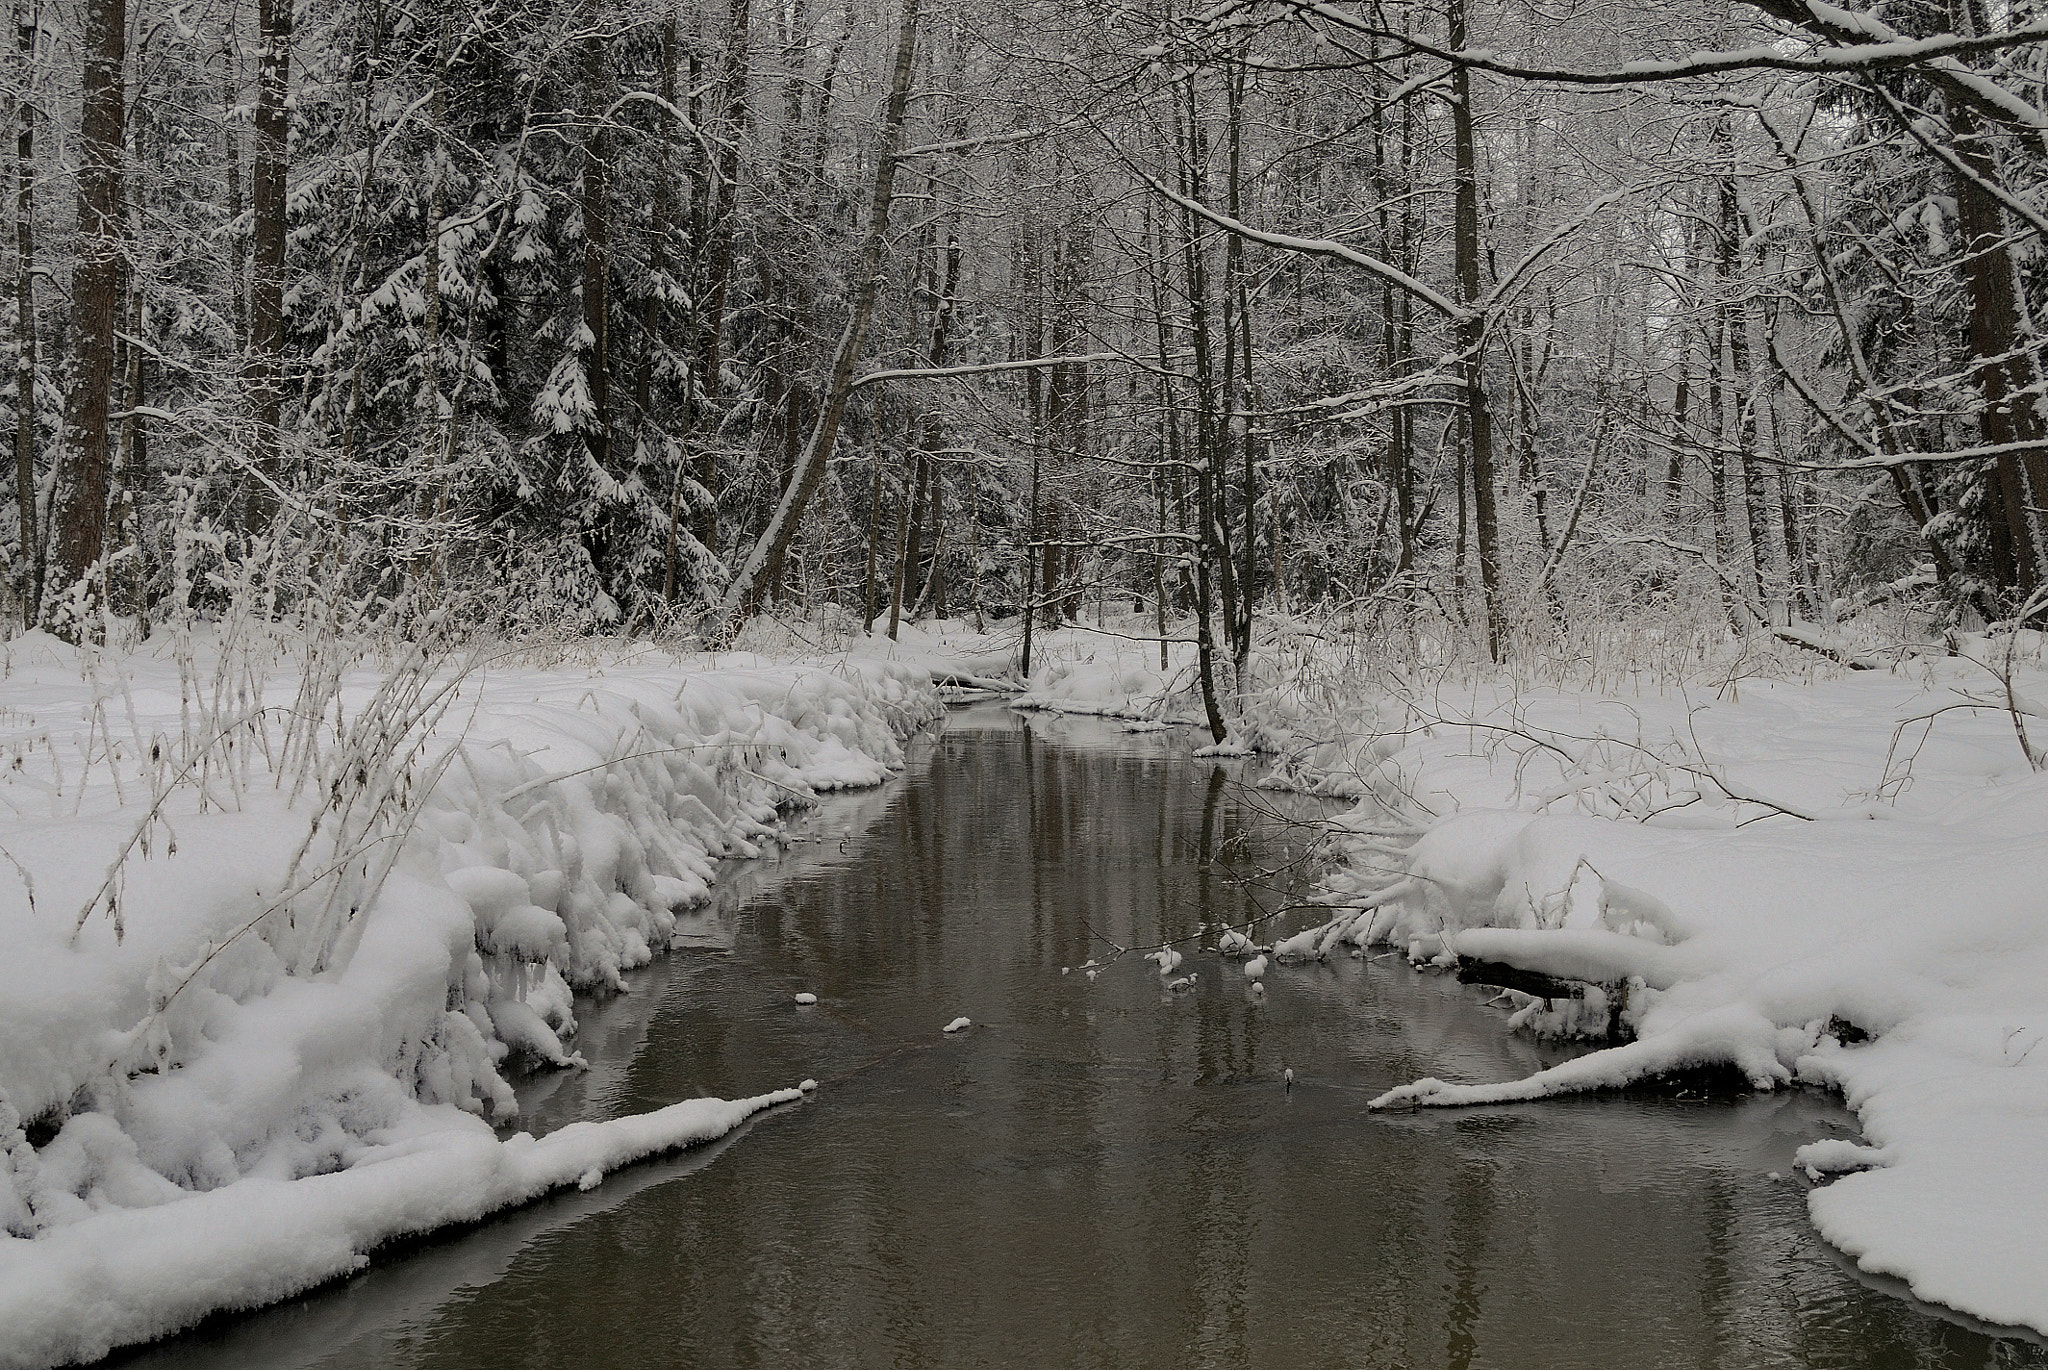 Nikon D300 + Nikon AF-S DX Nikkor 18-55mm F3.5-5.6G VR sample photo. Winter forest river. photography